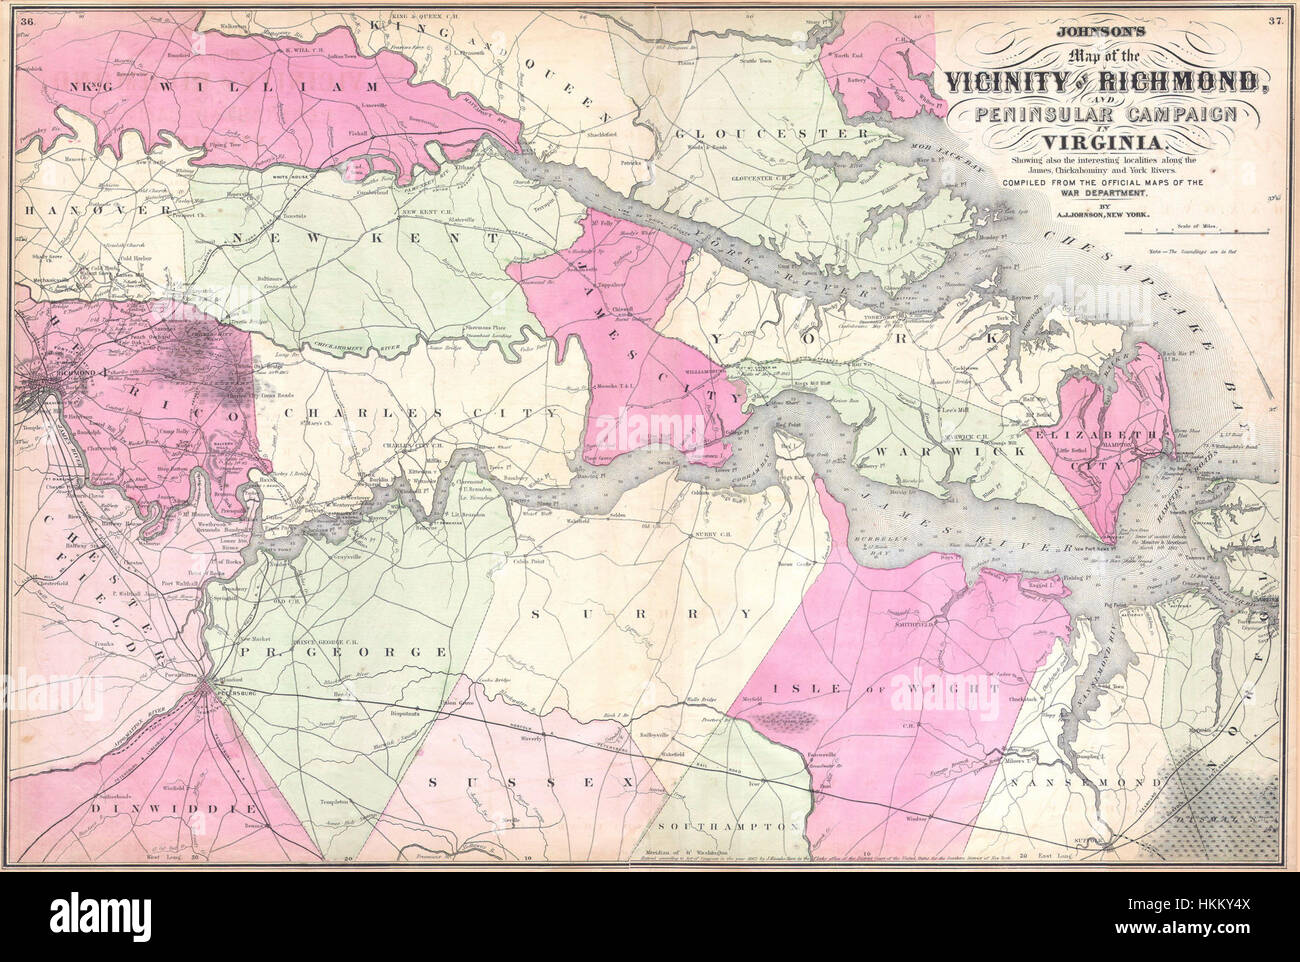 Johnson's 1862 Mapa de las cercanías de Richmond y la campaña peninsular en Virginia - Geographicus - Richmond-J-62 Foto de stock